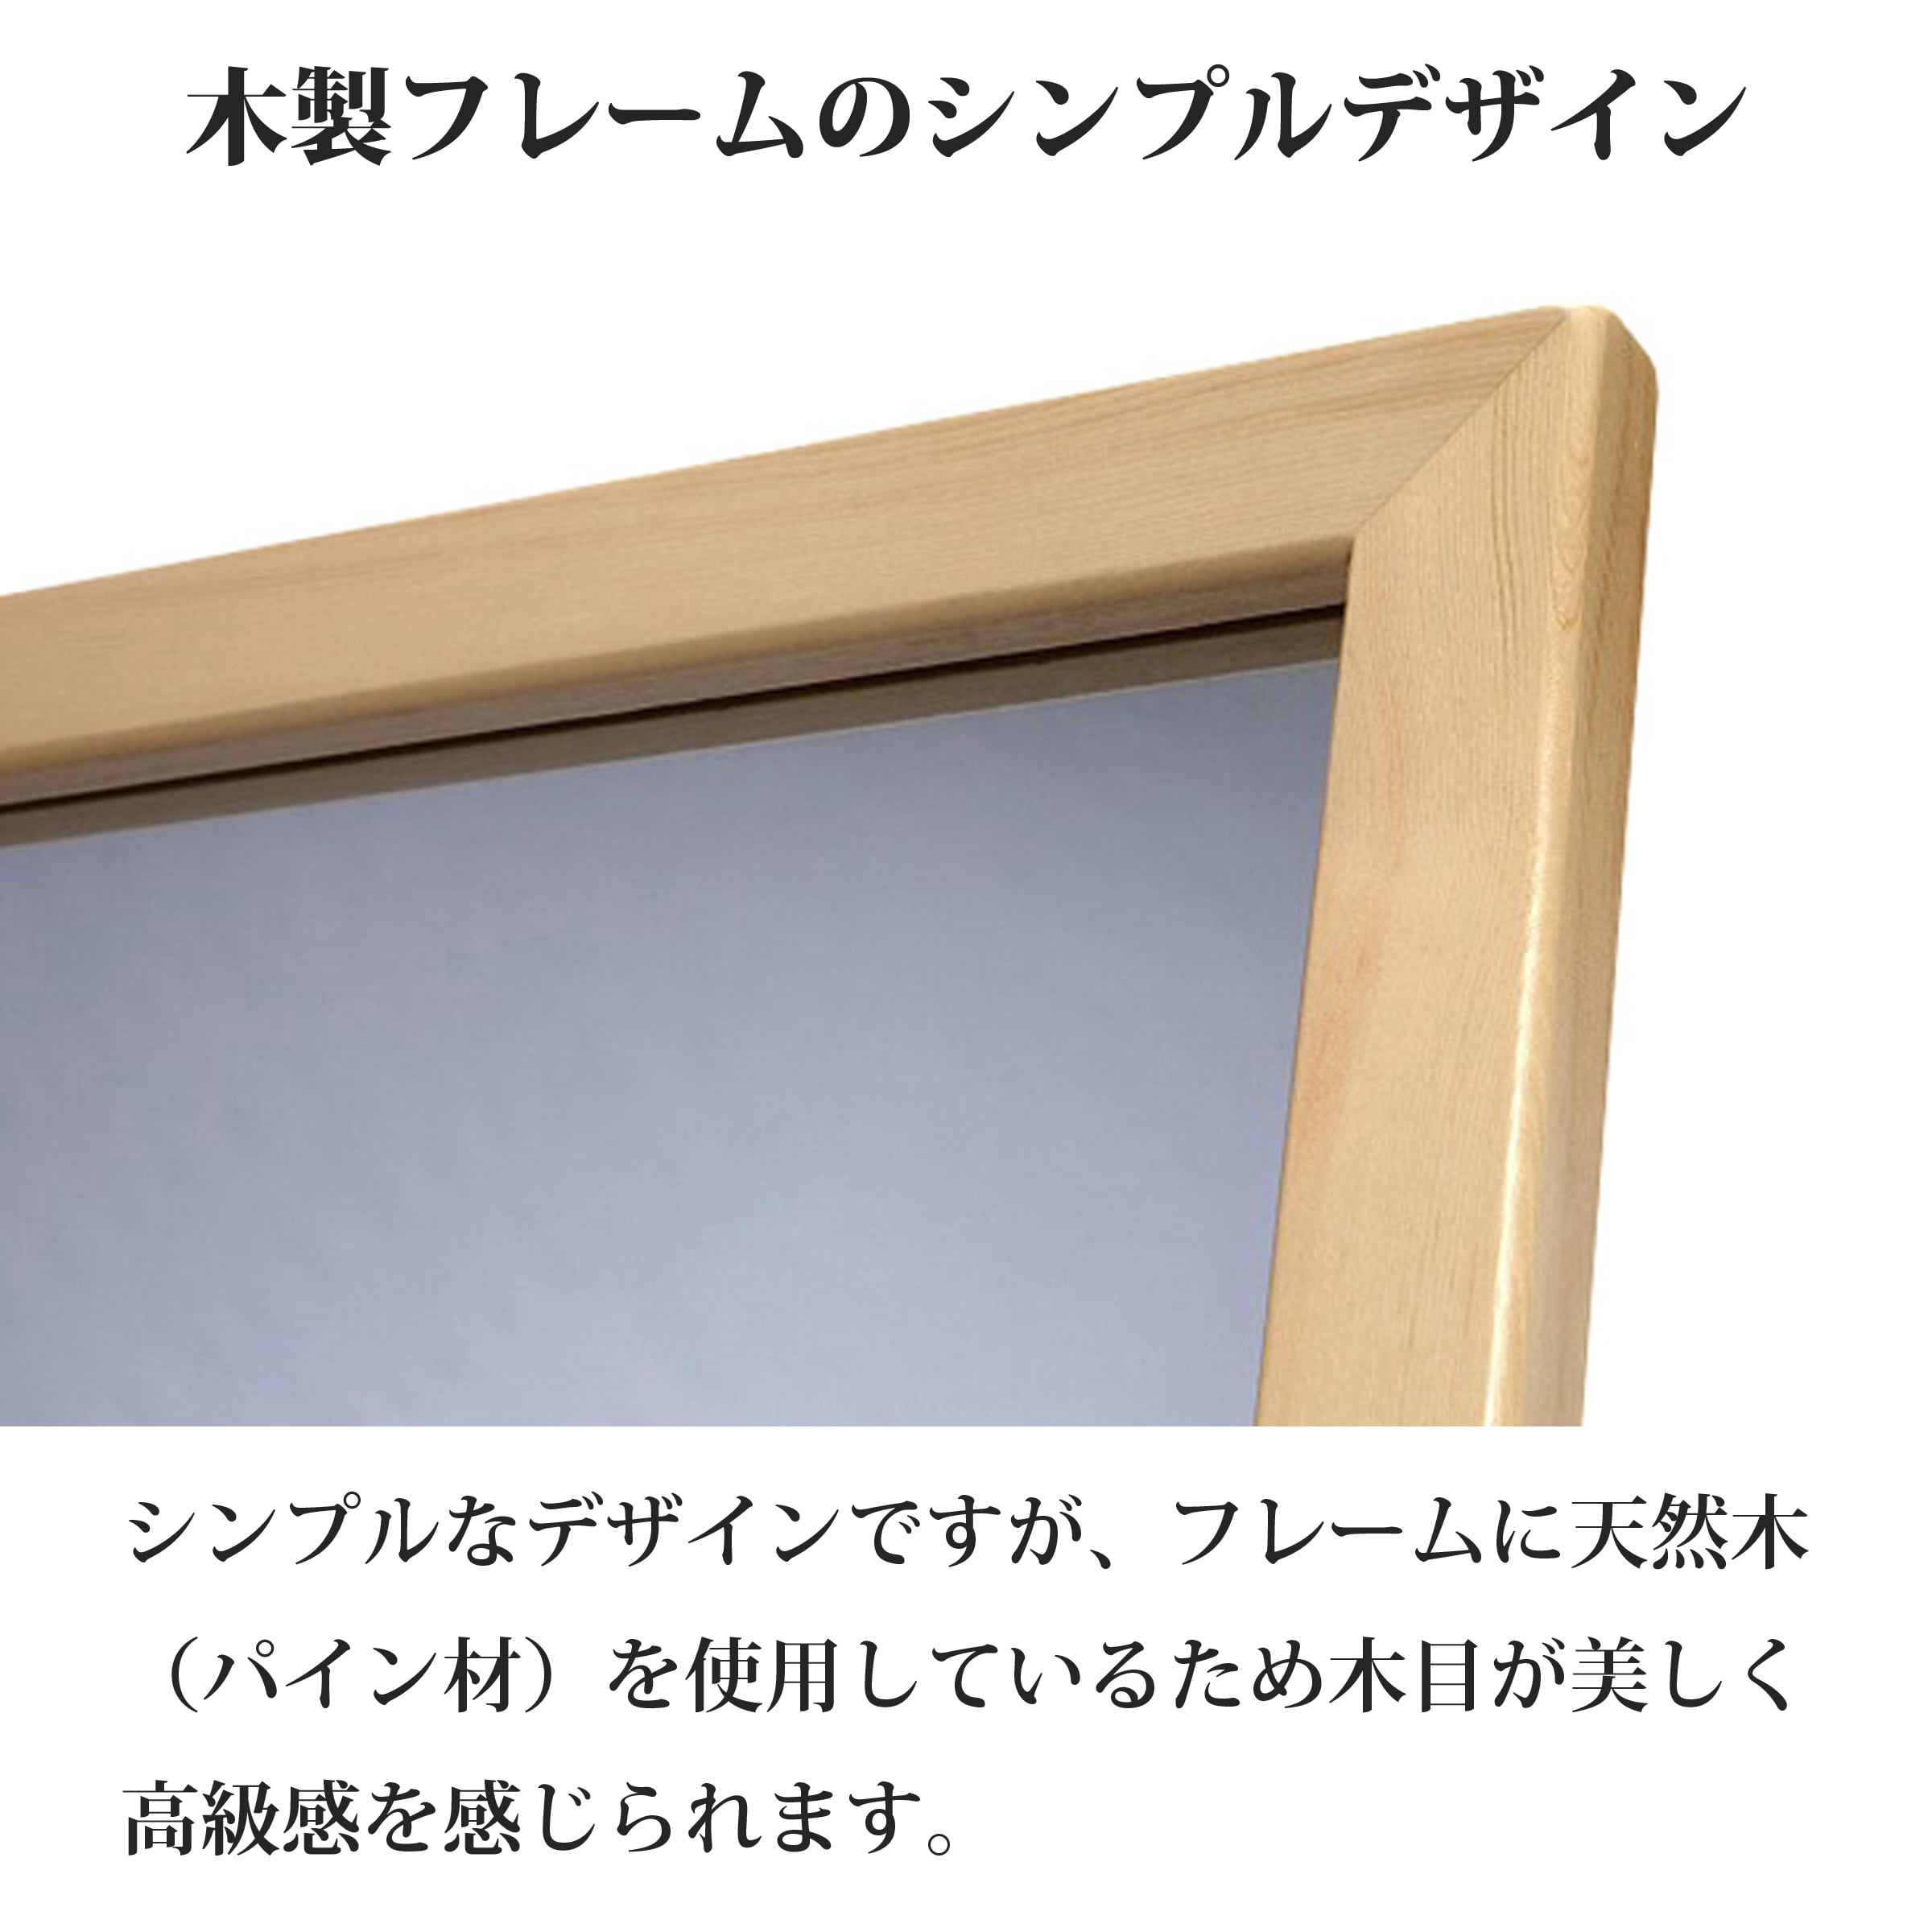 【ナチュラル】木製フレームスタンドミラー 鏡 姿見 全身スタンドミラー 天然パイン材使用